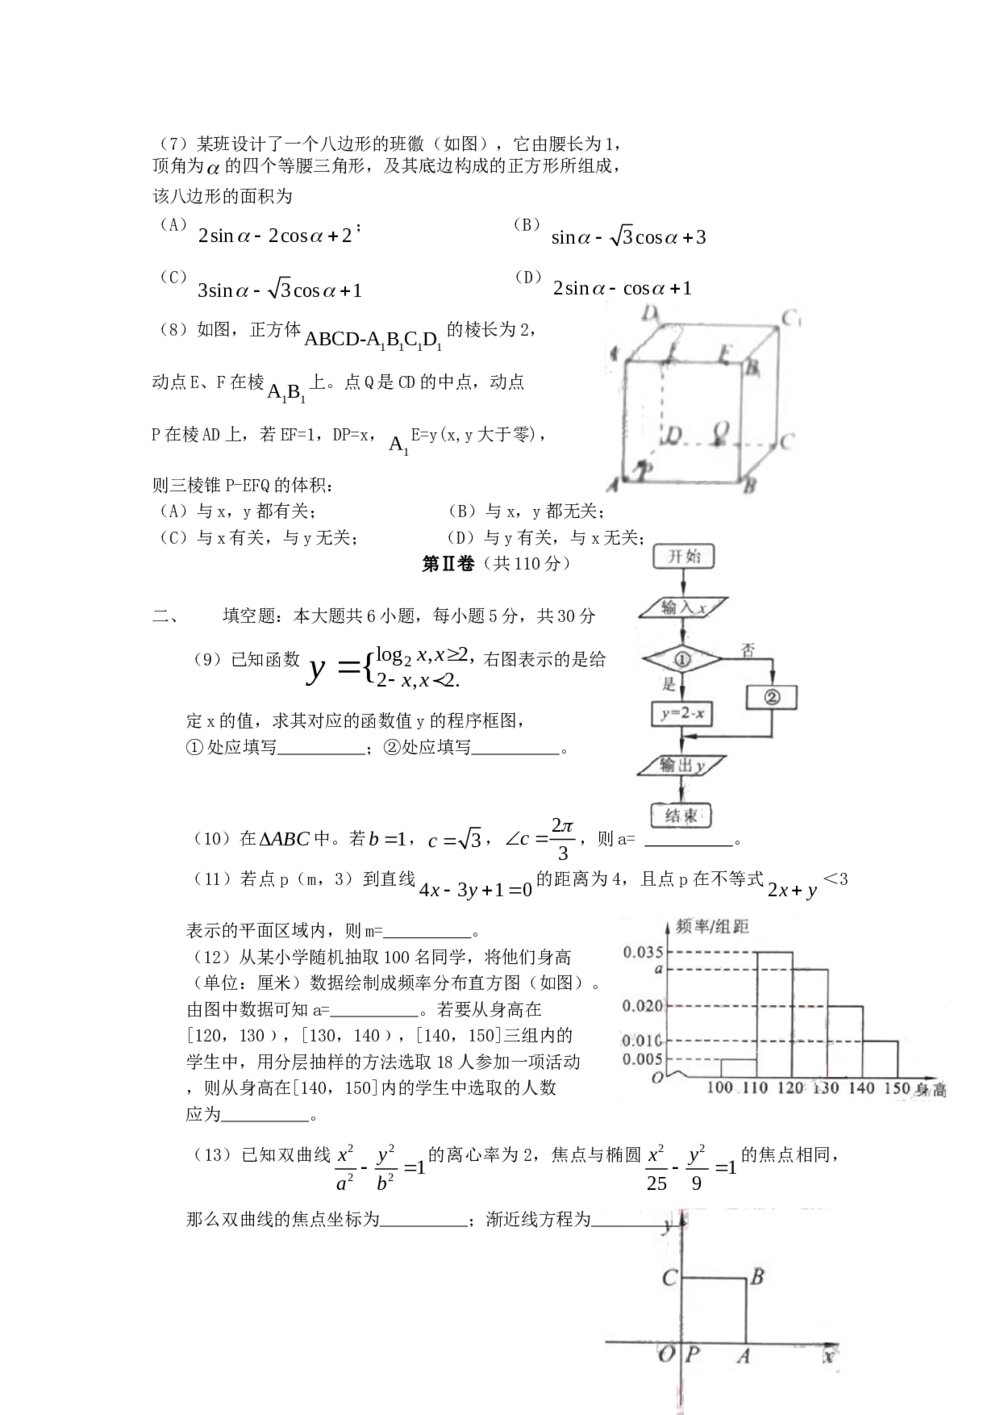 高考试题(北京卷)--数学文科+(参考答案)2